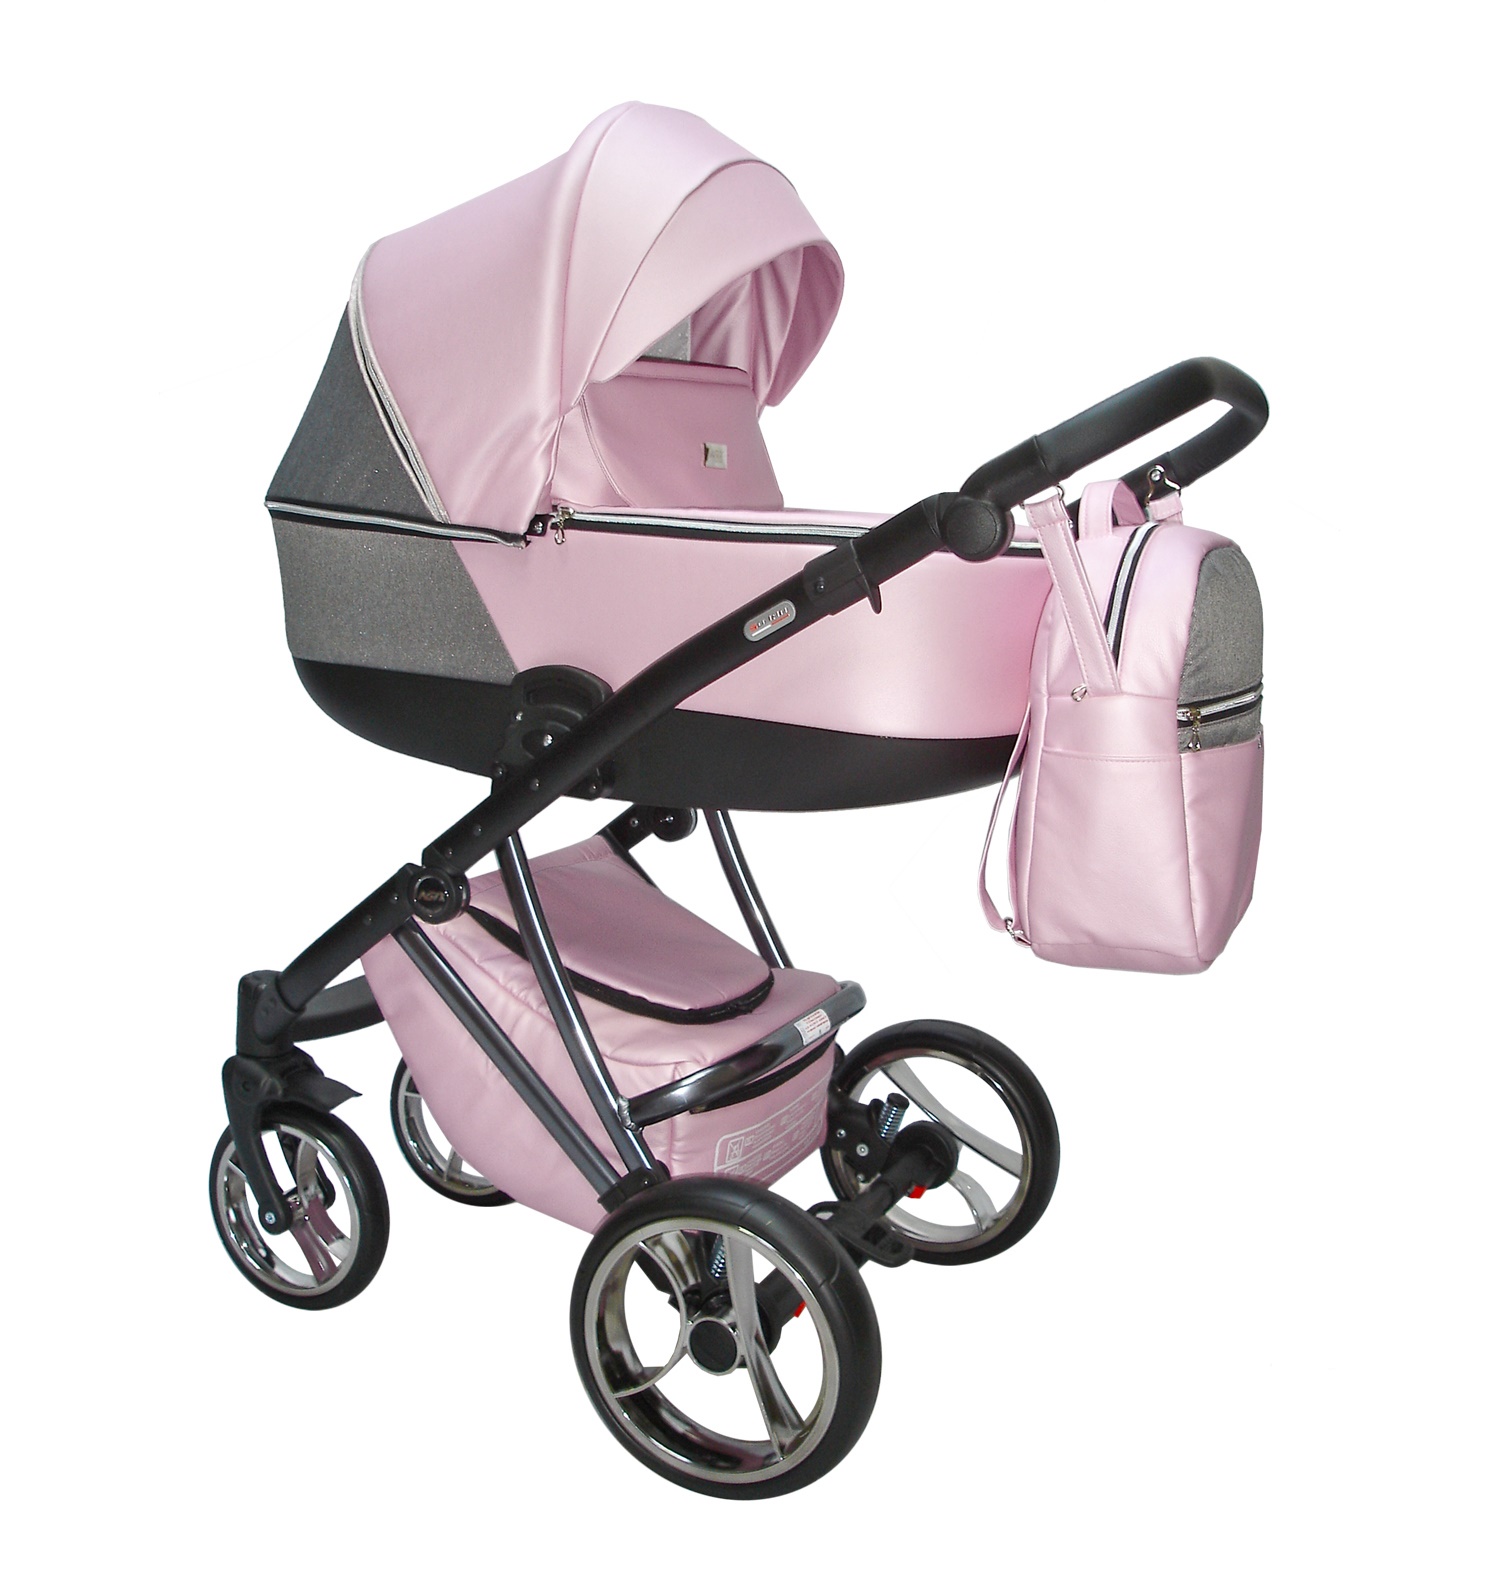 Carro de bebé rosa y estampado flores - Agix - El mimo de mama